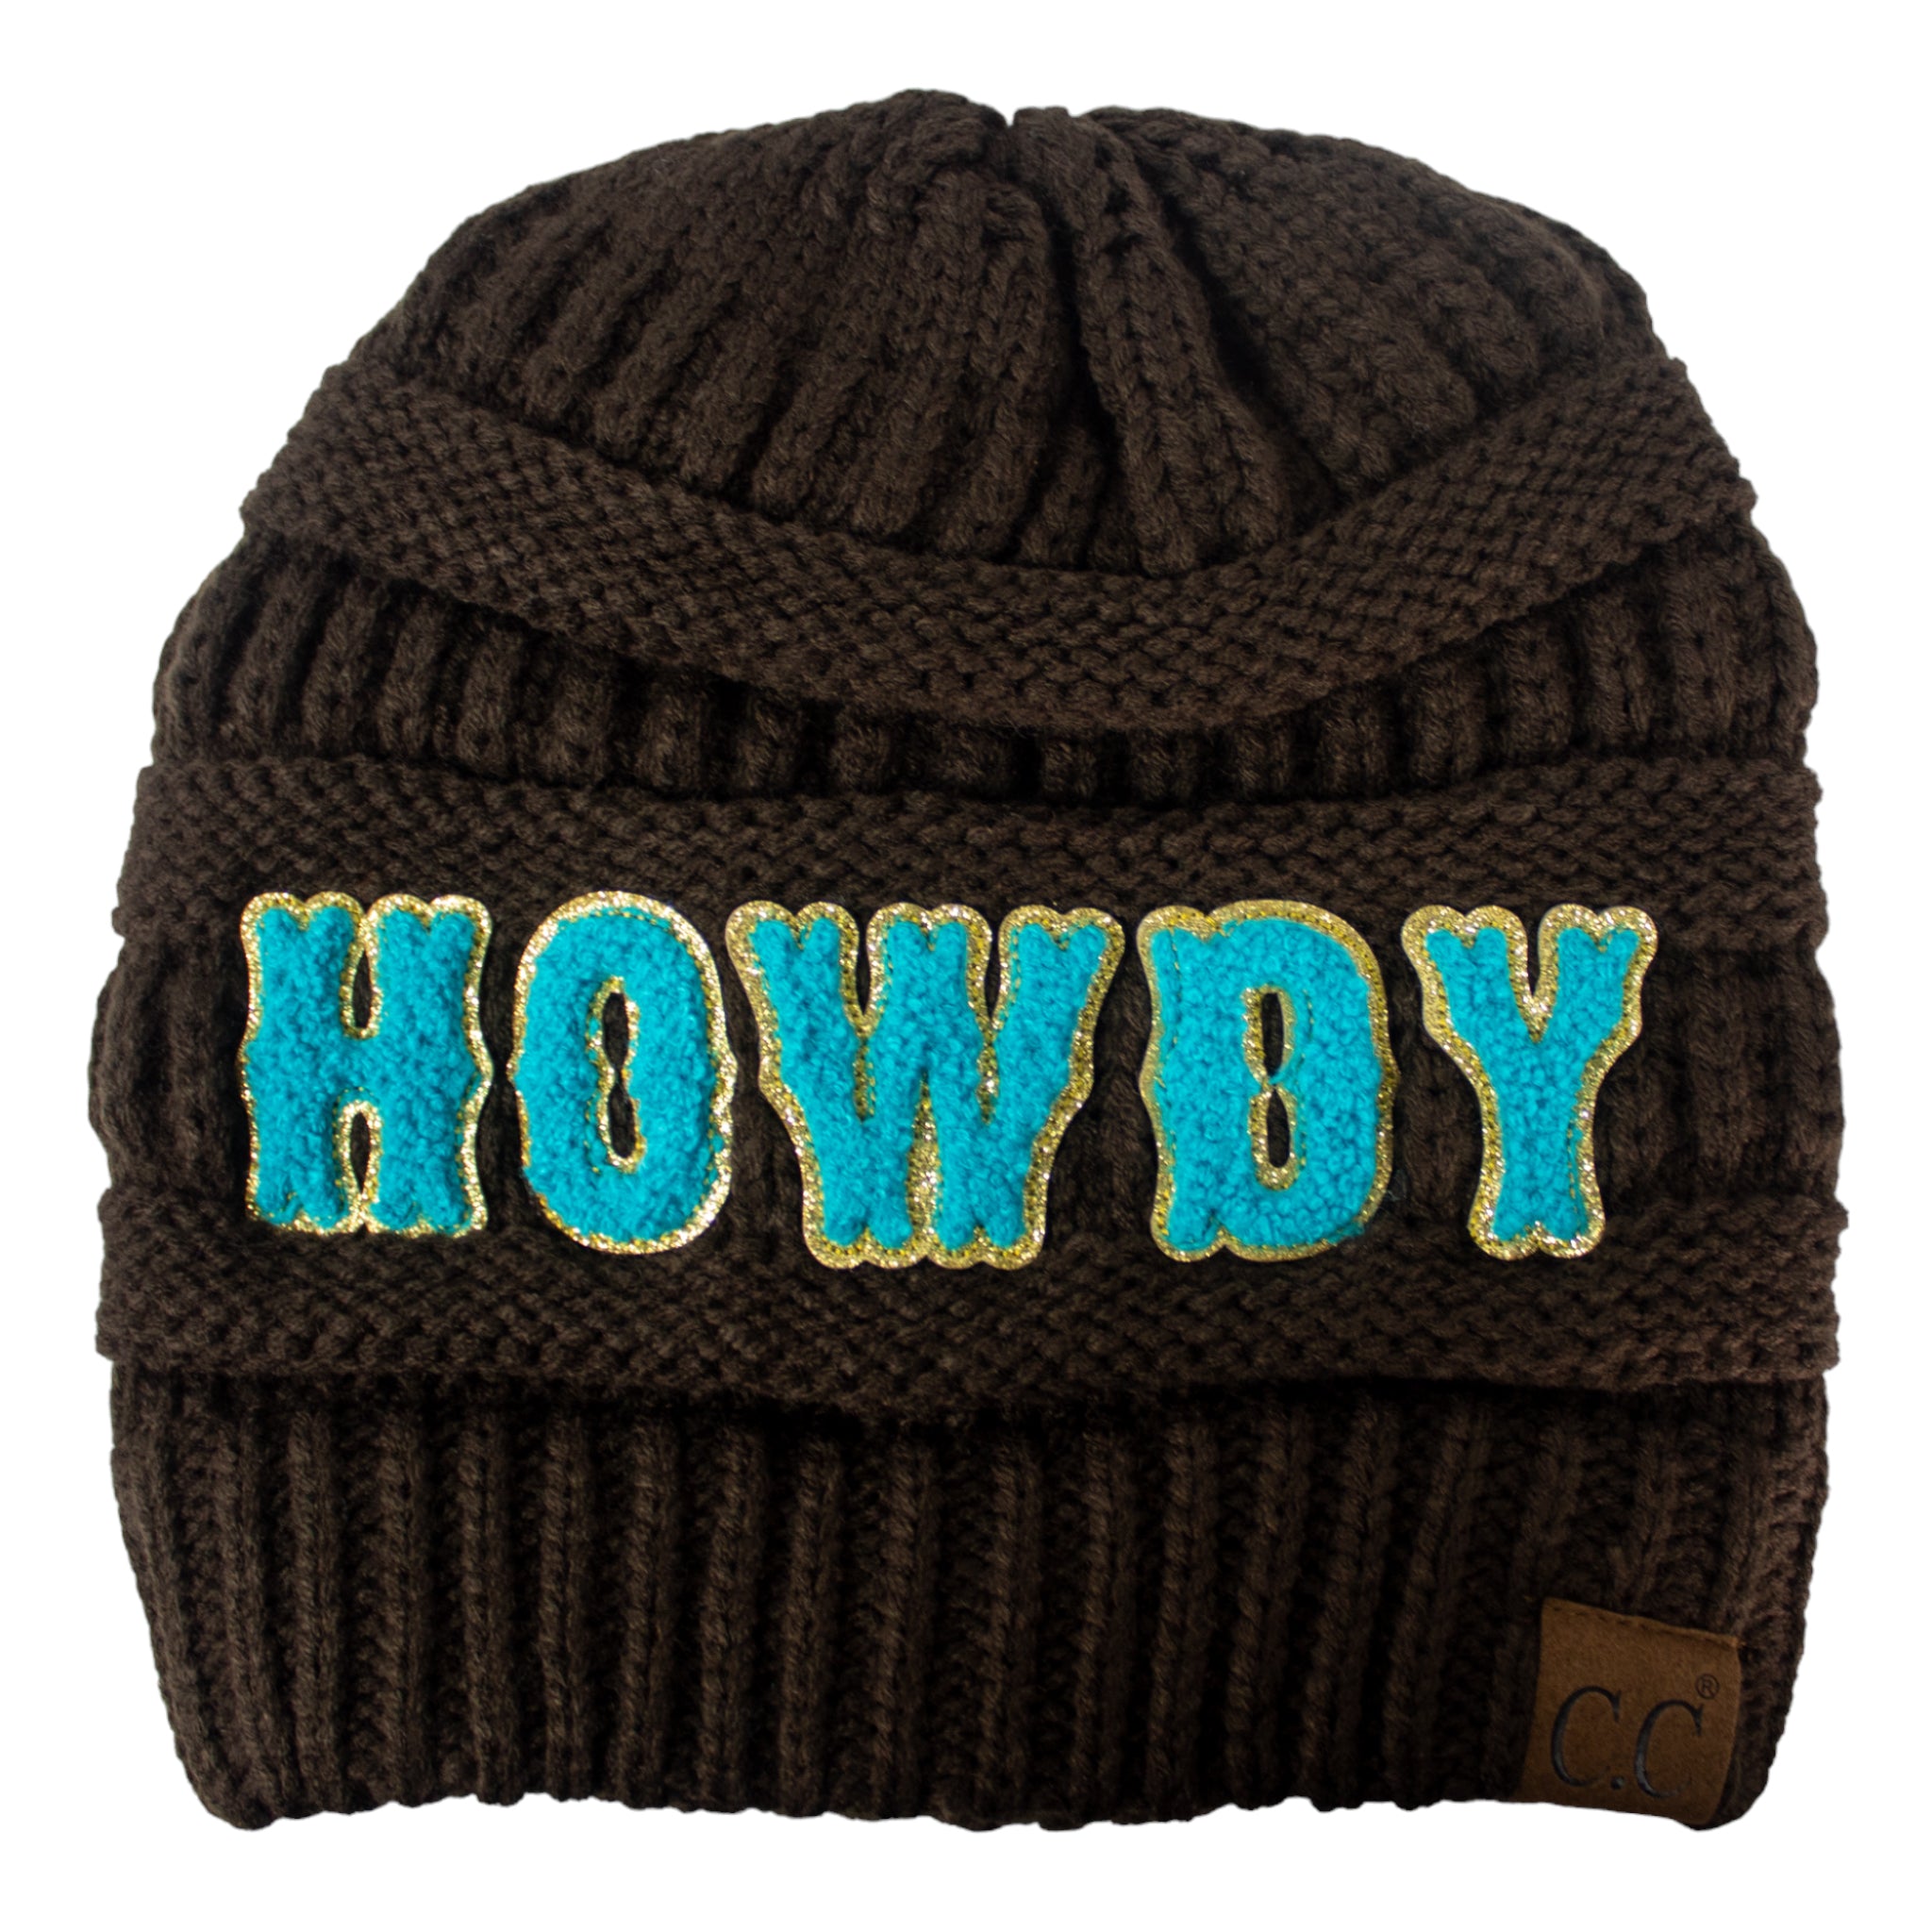 BJ-HTE-0037 Howdy Brown Beanie